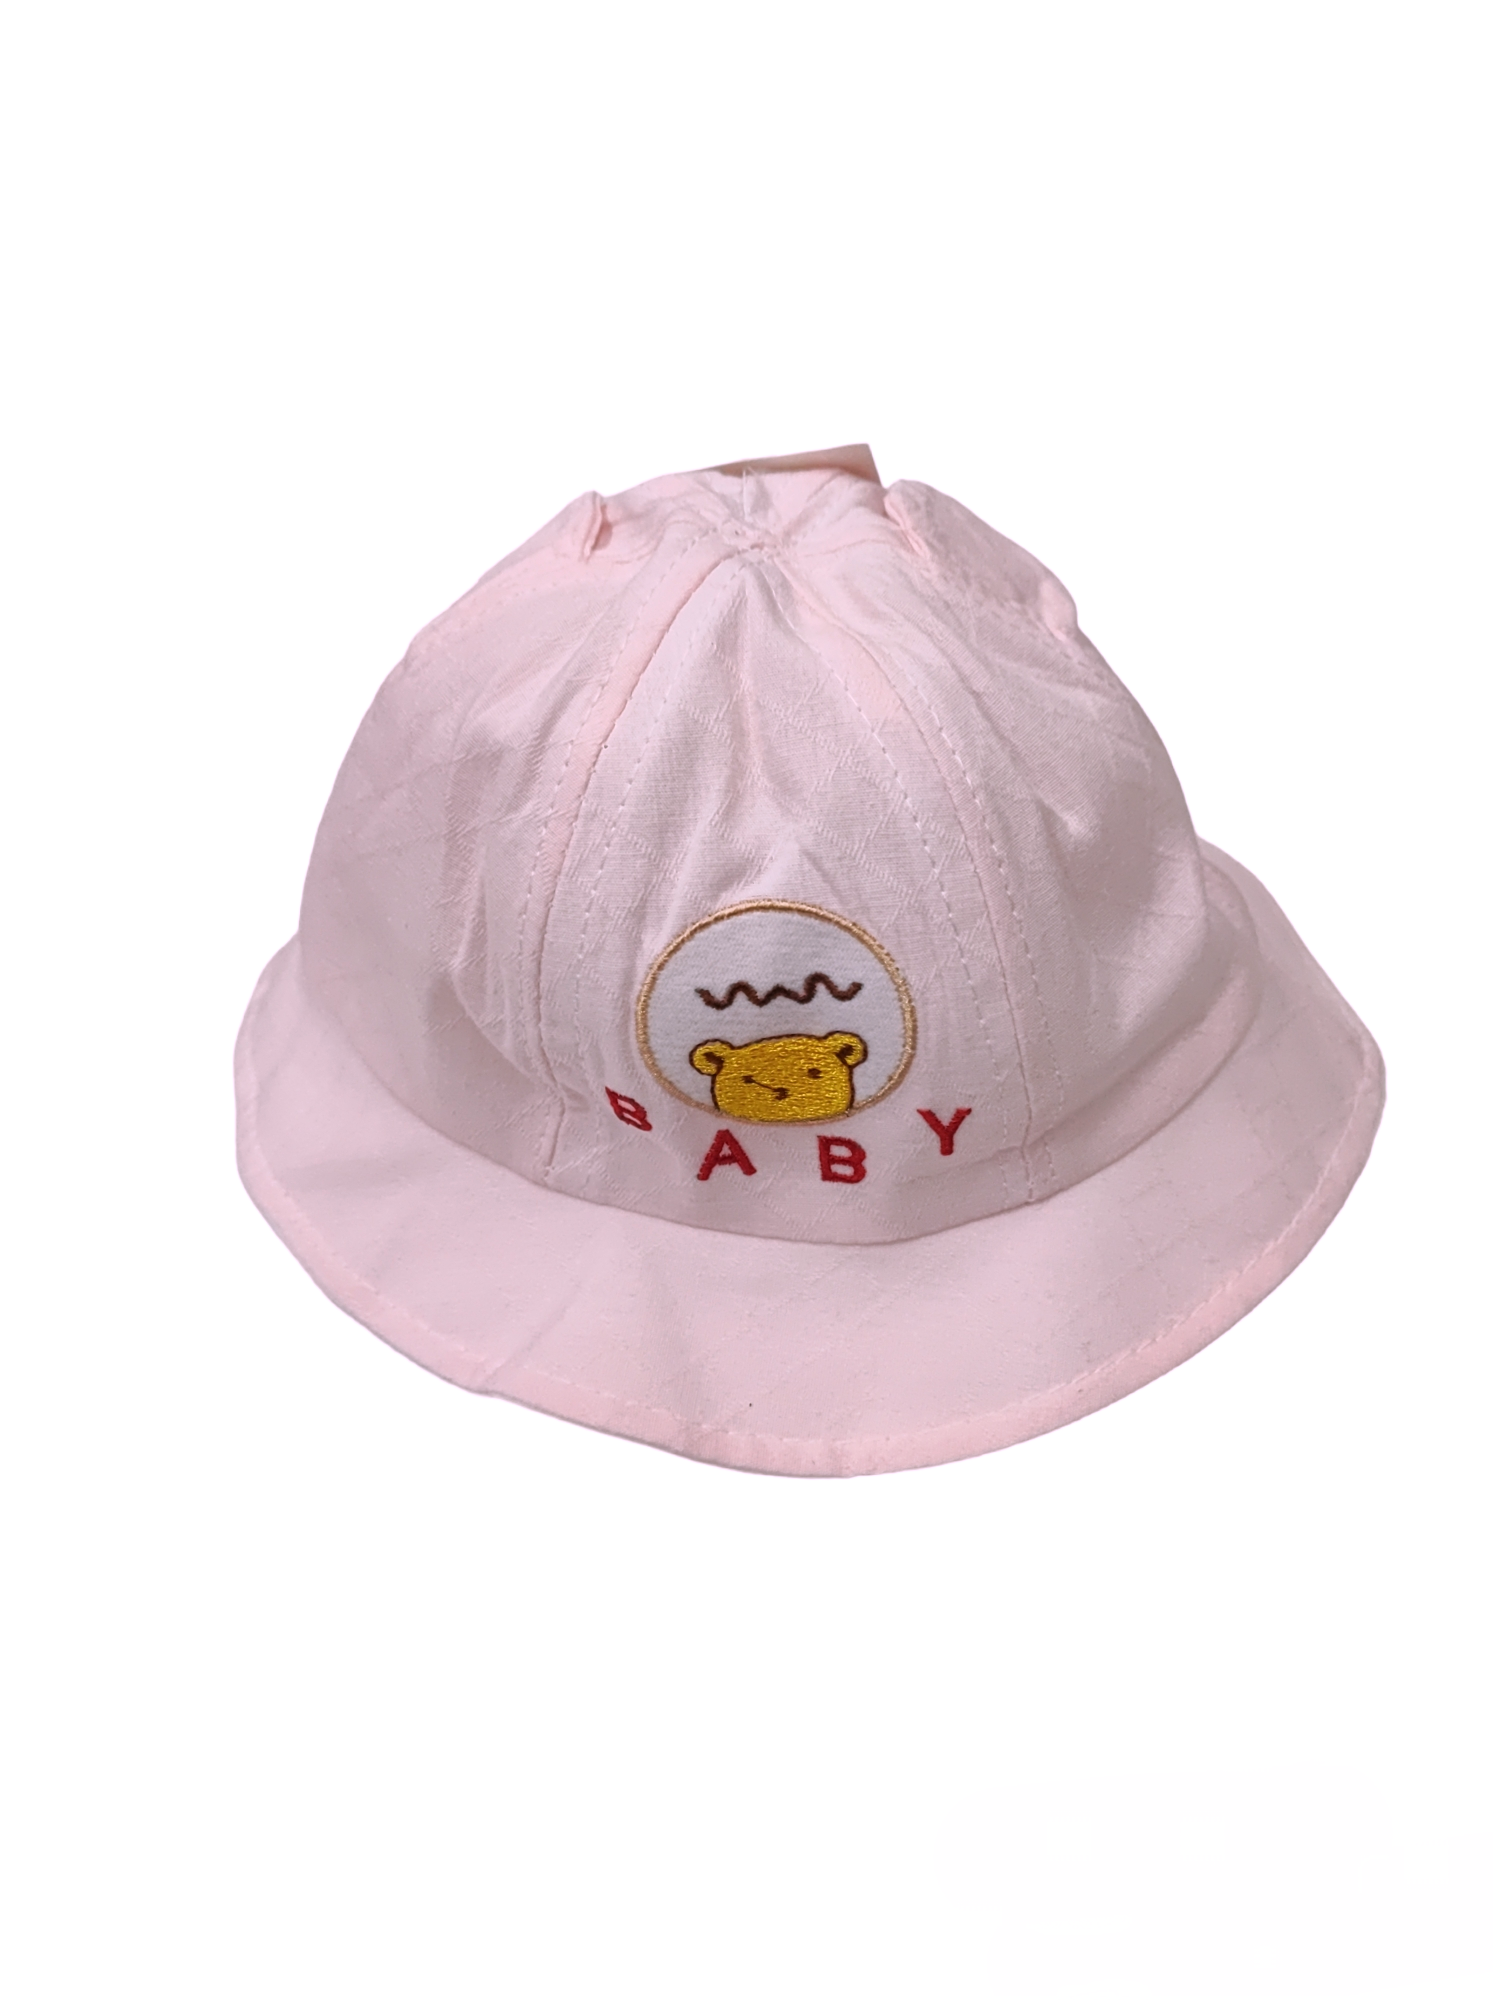 Chapeaux bob   BABY  (x12)